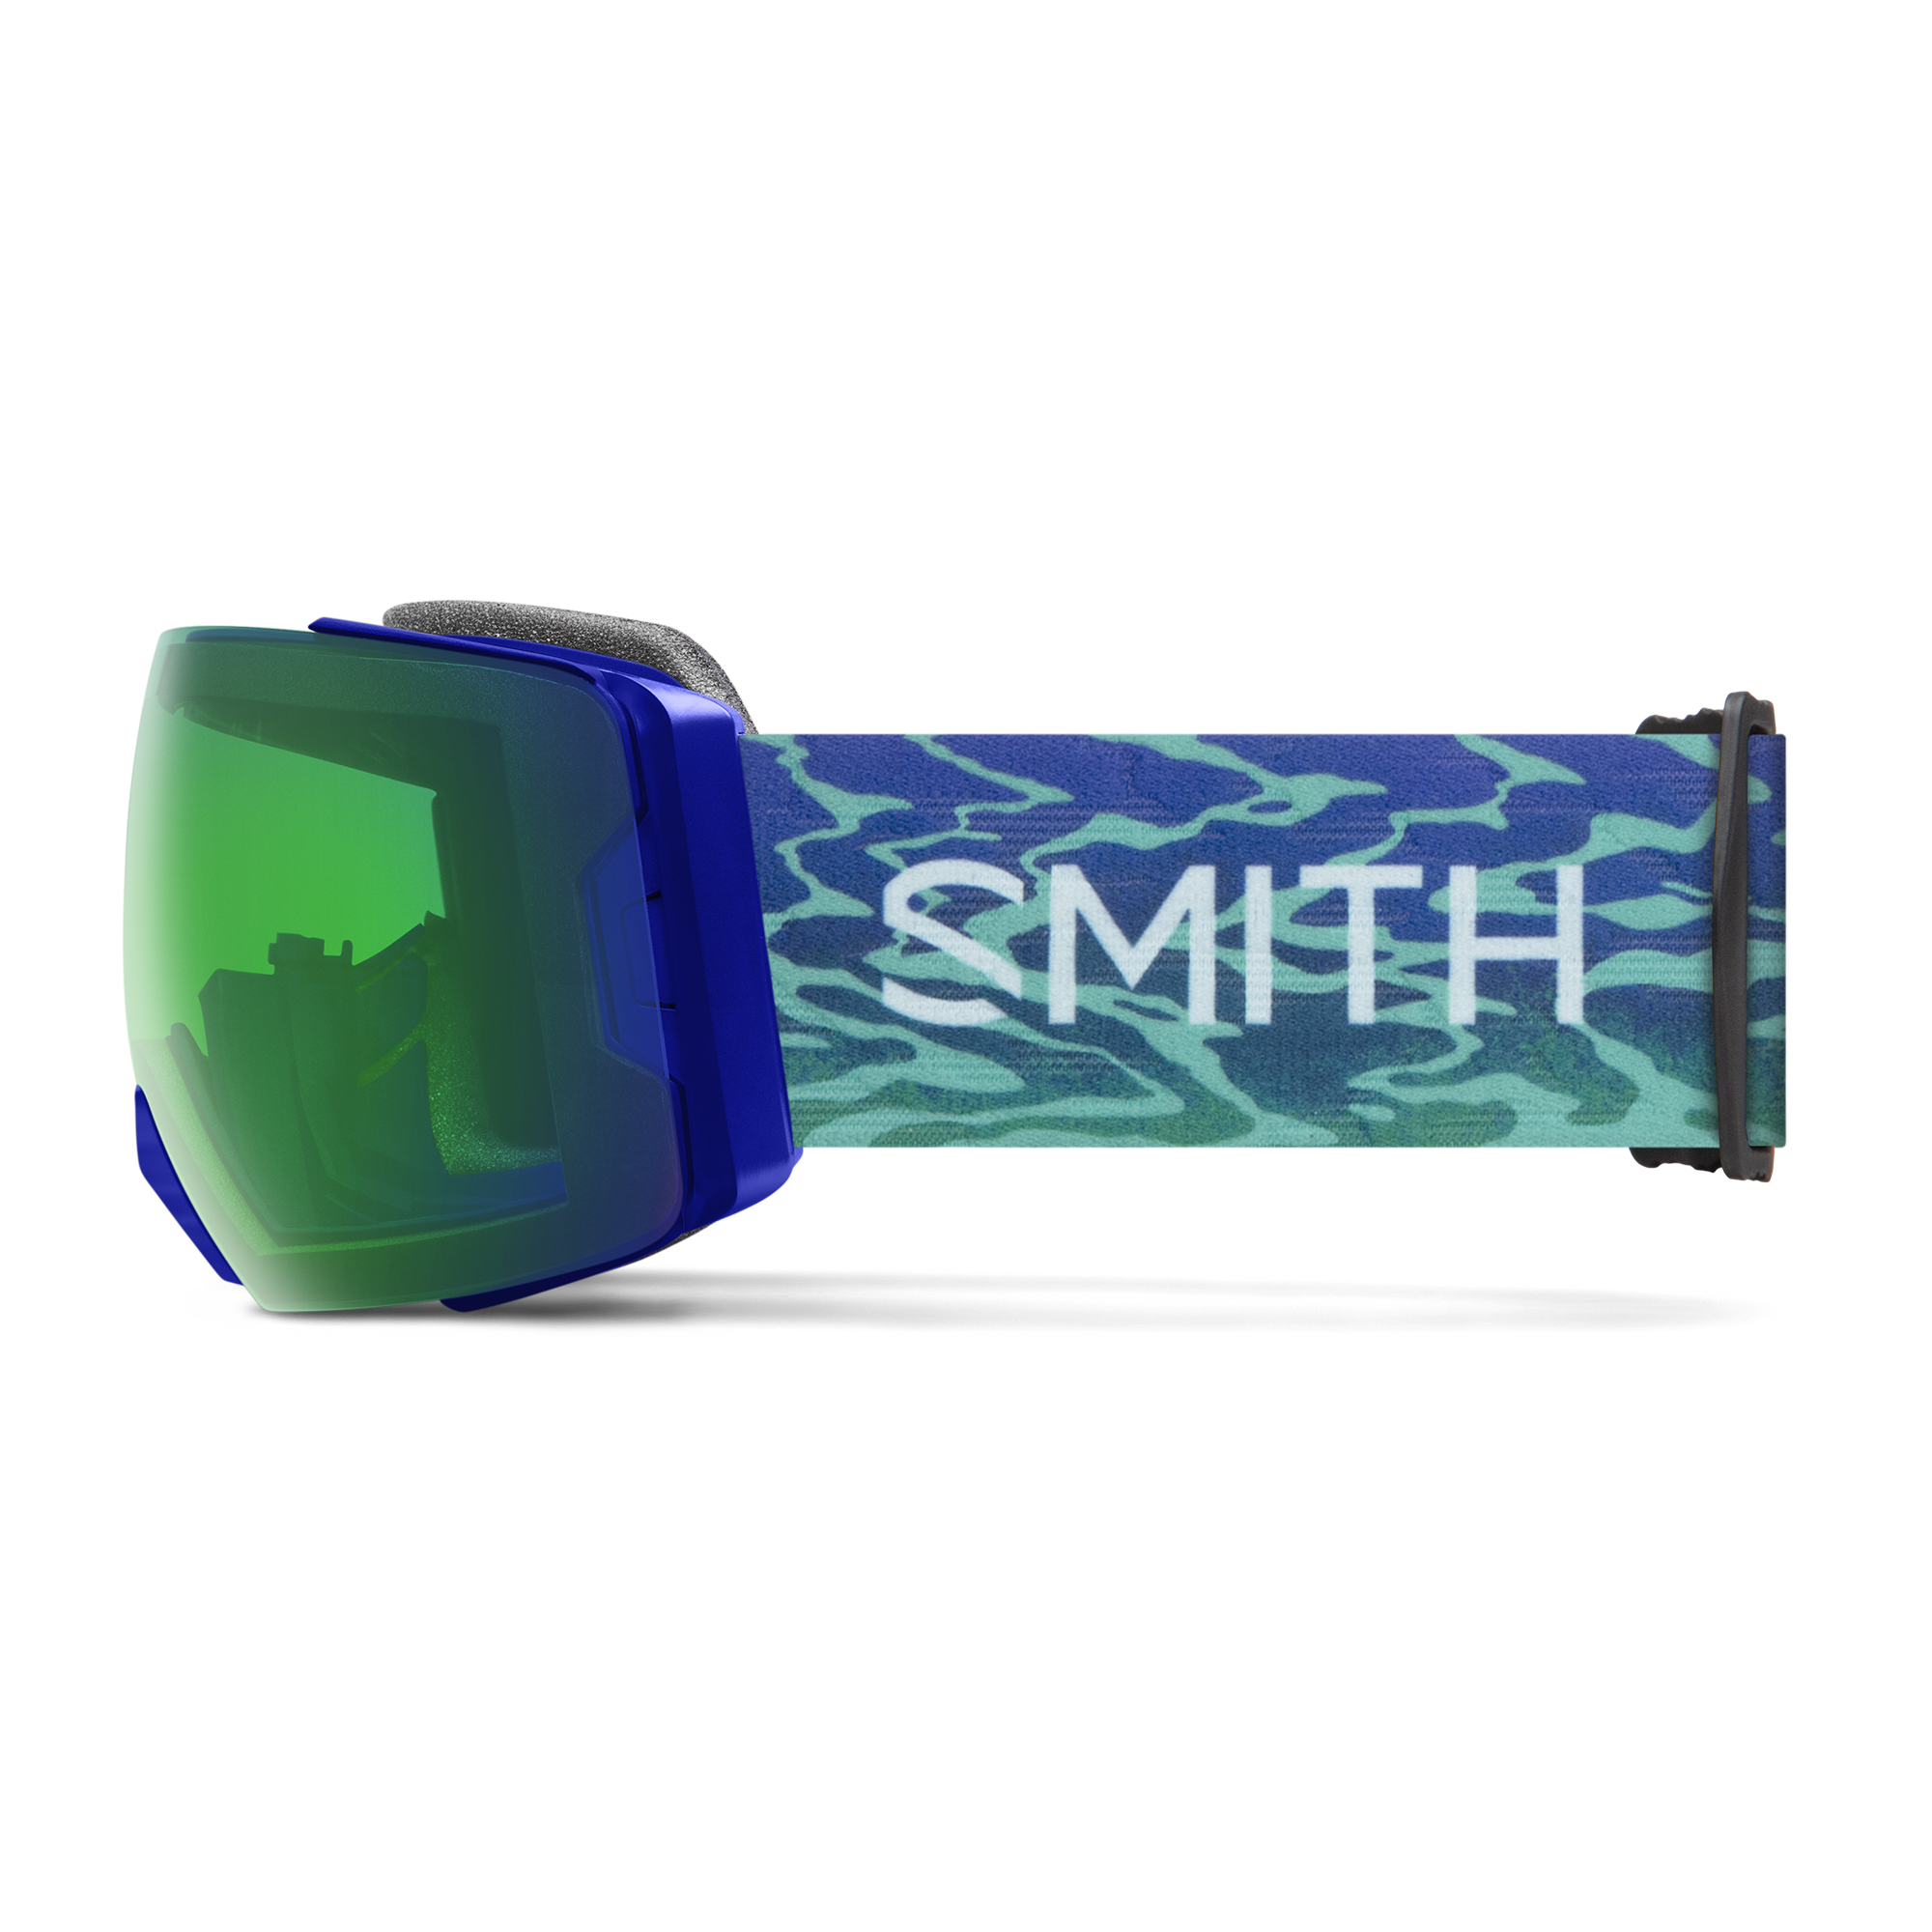 Smith I/O Mag XL Blackout (+Bonus Lens) Gafas de Ventisca - comprar en Blue  Tomato